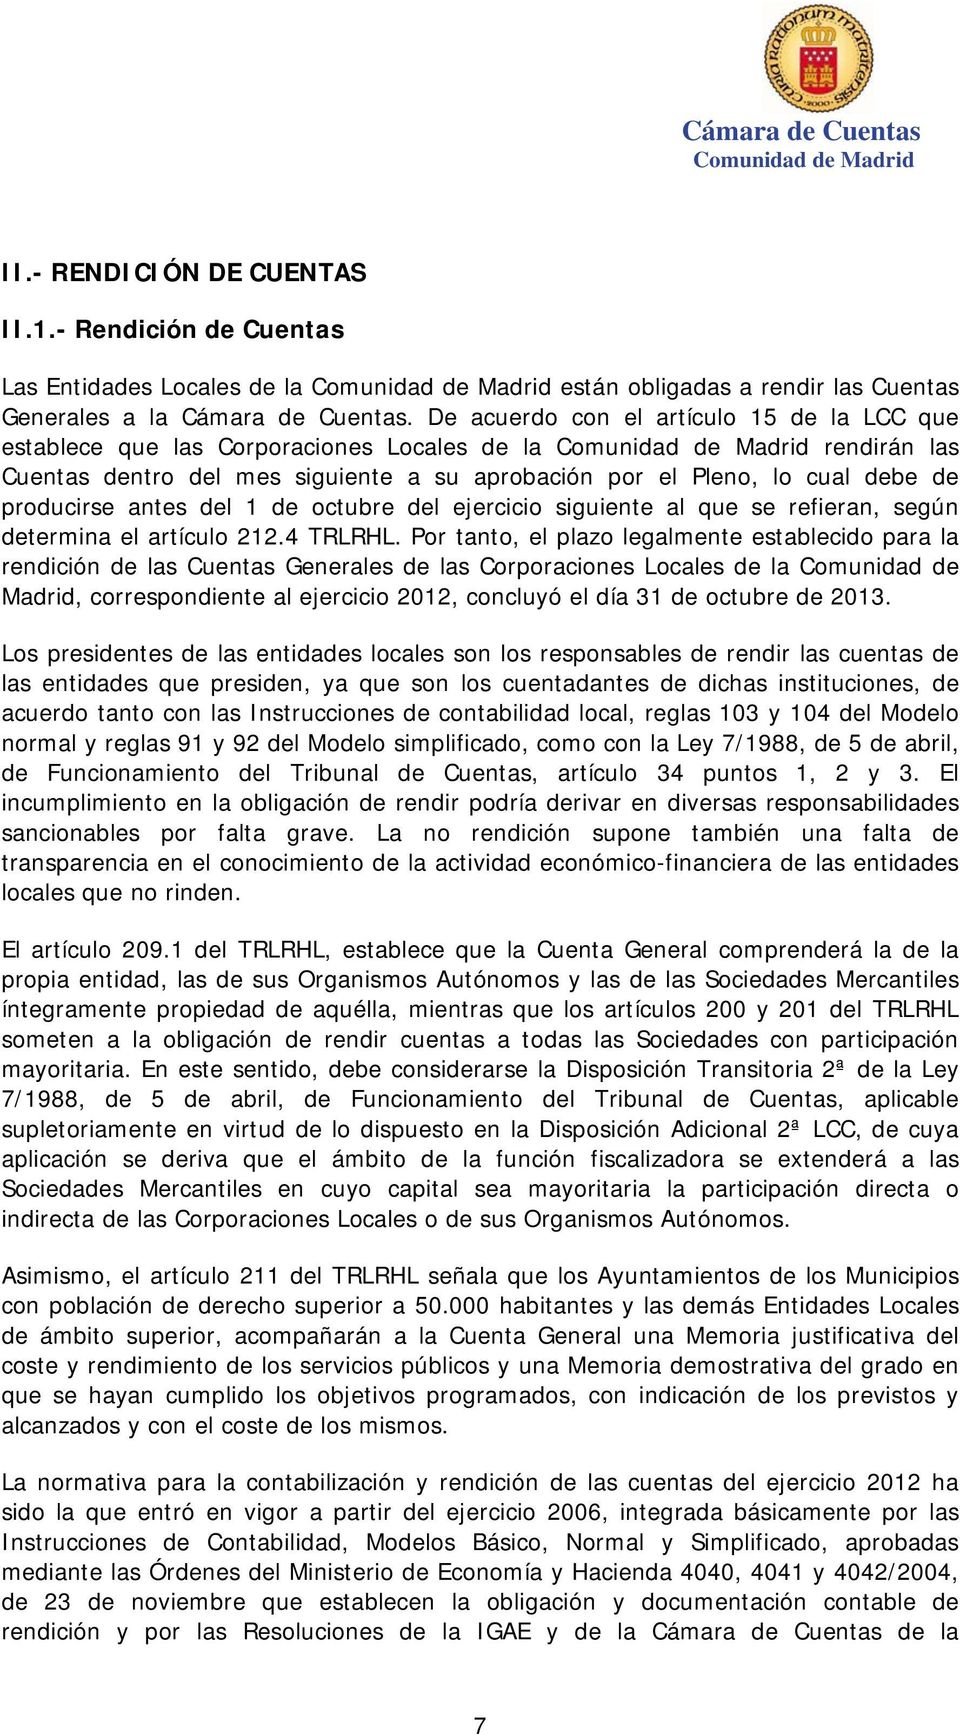 De acuerdo con el artículo 15 de la LCC que establece que las Corporaciones Locales de la Comunidad de Madrid rendirán las Cuentas dentro del mes siguiente a su aprobación por el Pleno, lo cual debe